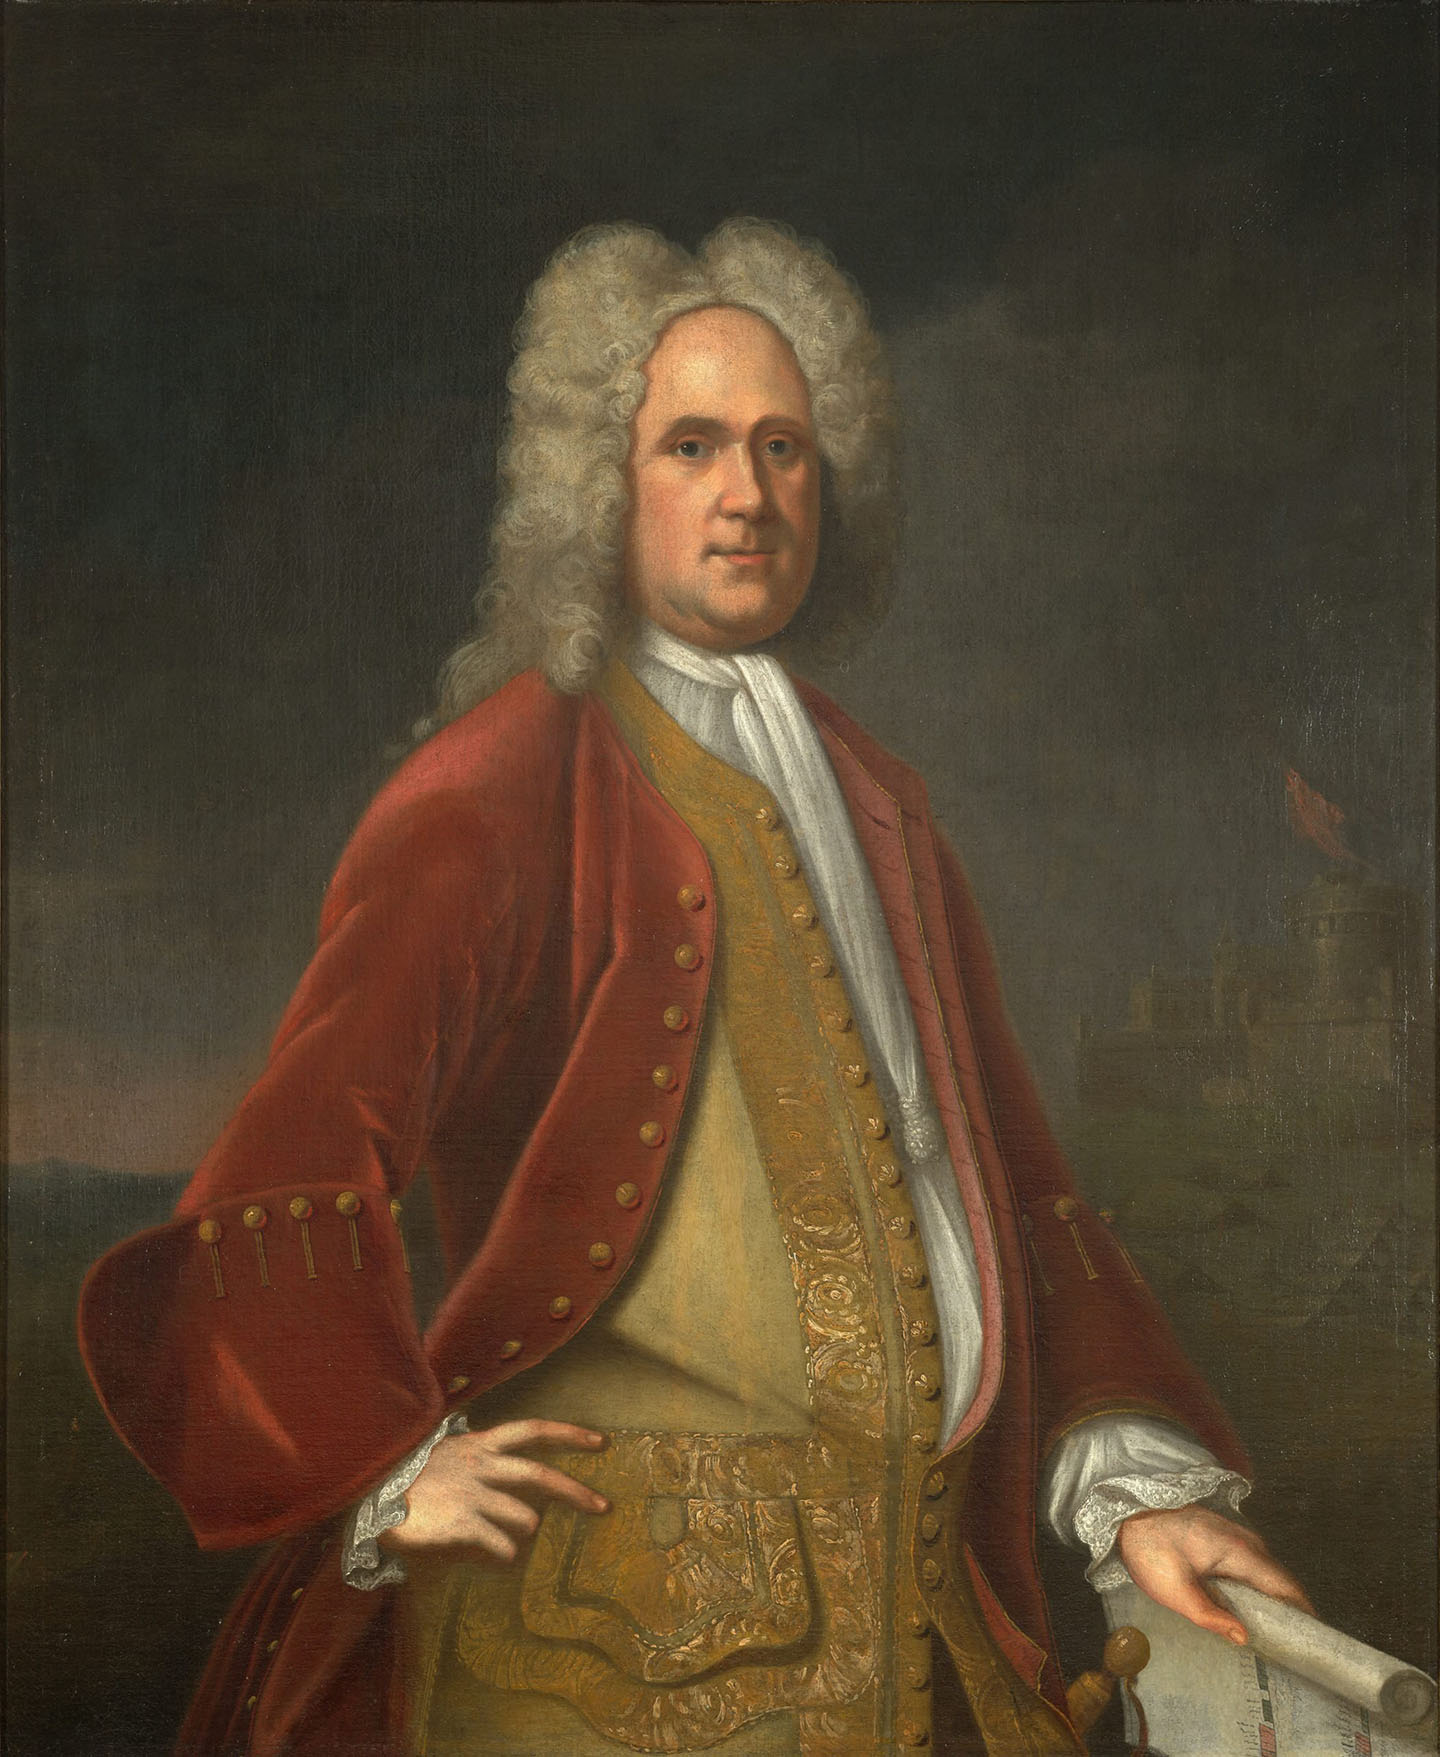 Một bức chân dung của ngài Alexander Spotswood do họa sĩ Charles Bridges thực hiện vào năm 1736. Tranh sơn dầu trên vải canvas. Thư viện Virginia. (Ảnh: Tài sản công)